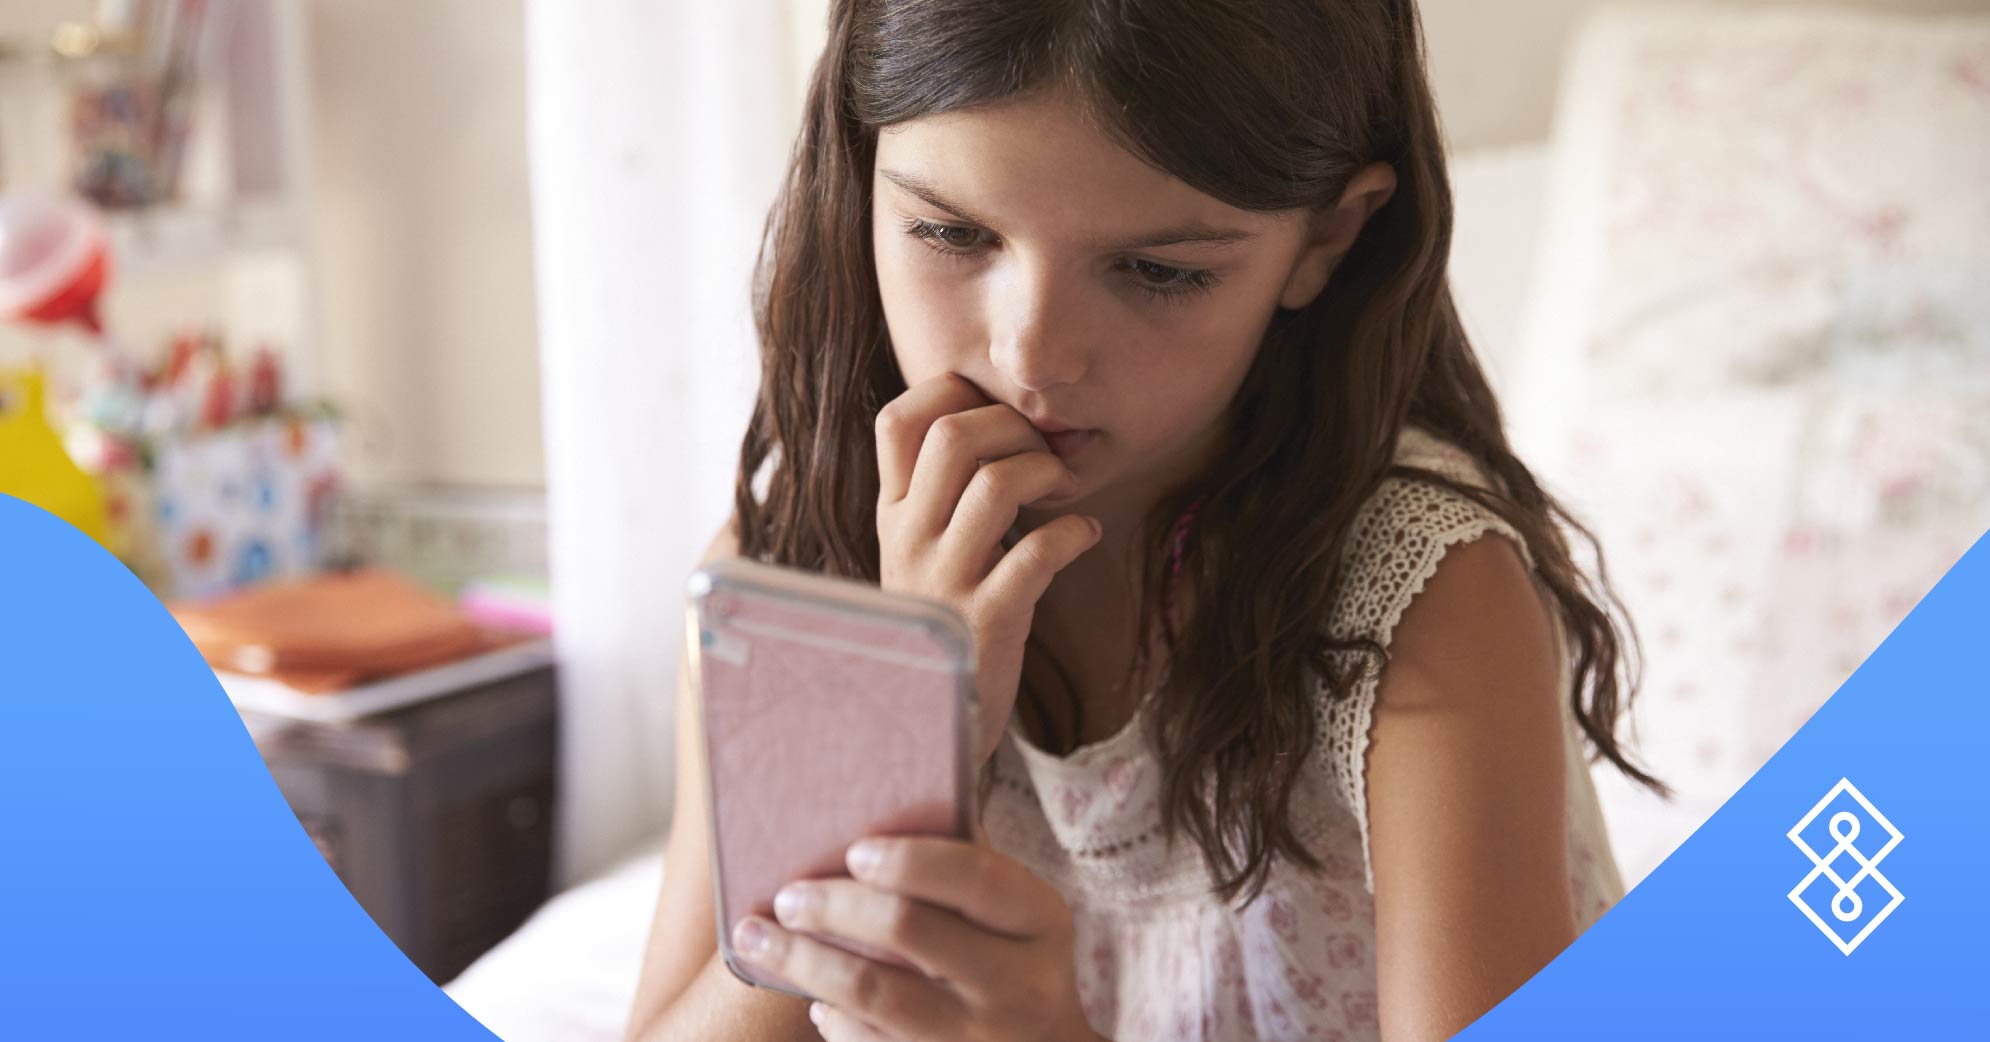 Consumo de pantallas en niños durante la cuarentena: conoce cómo regularlo